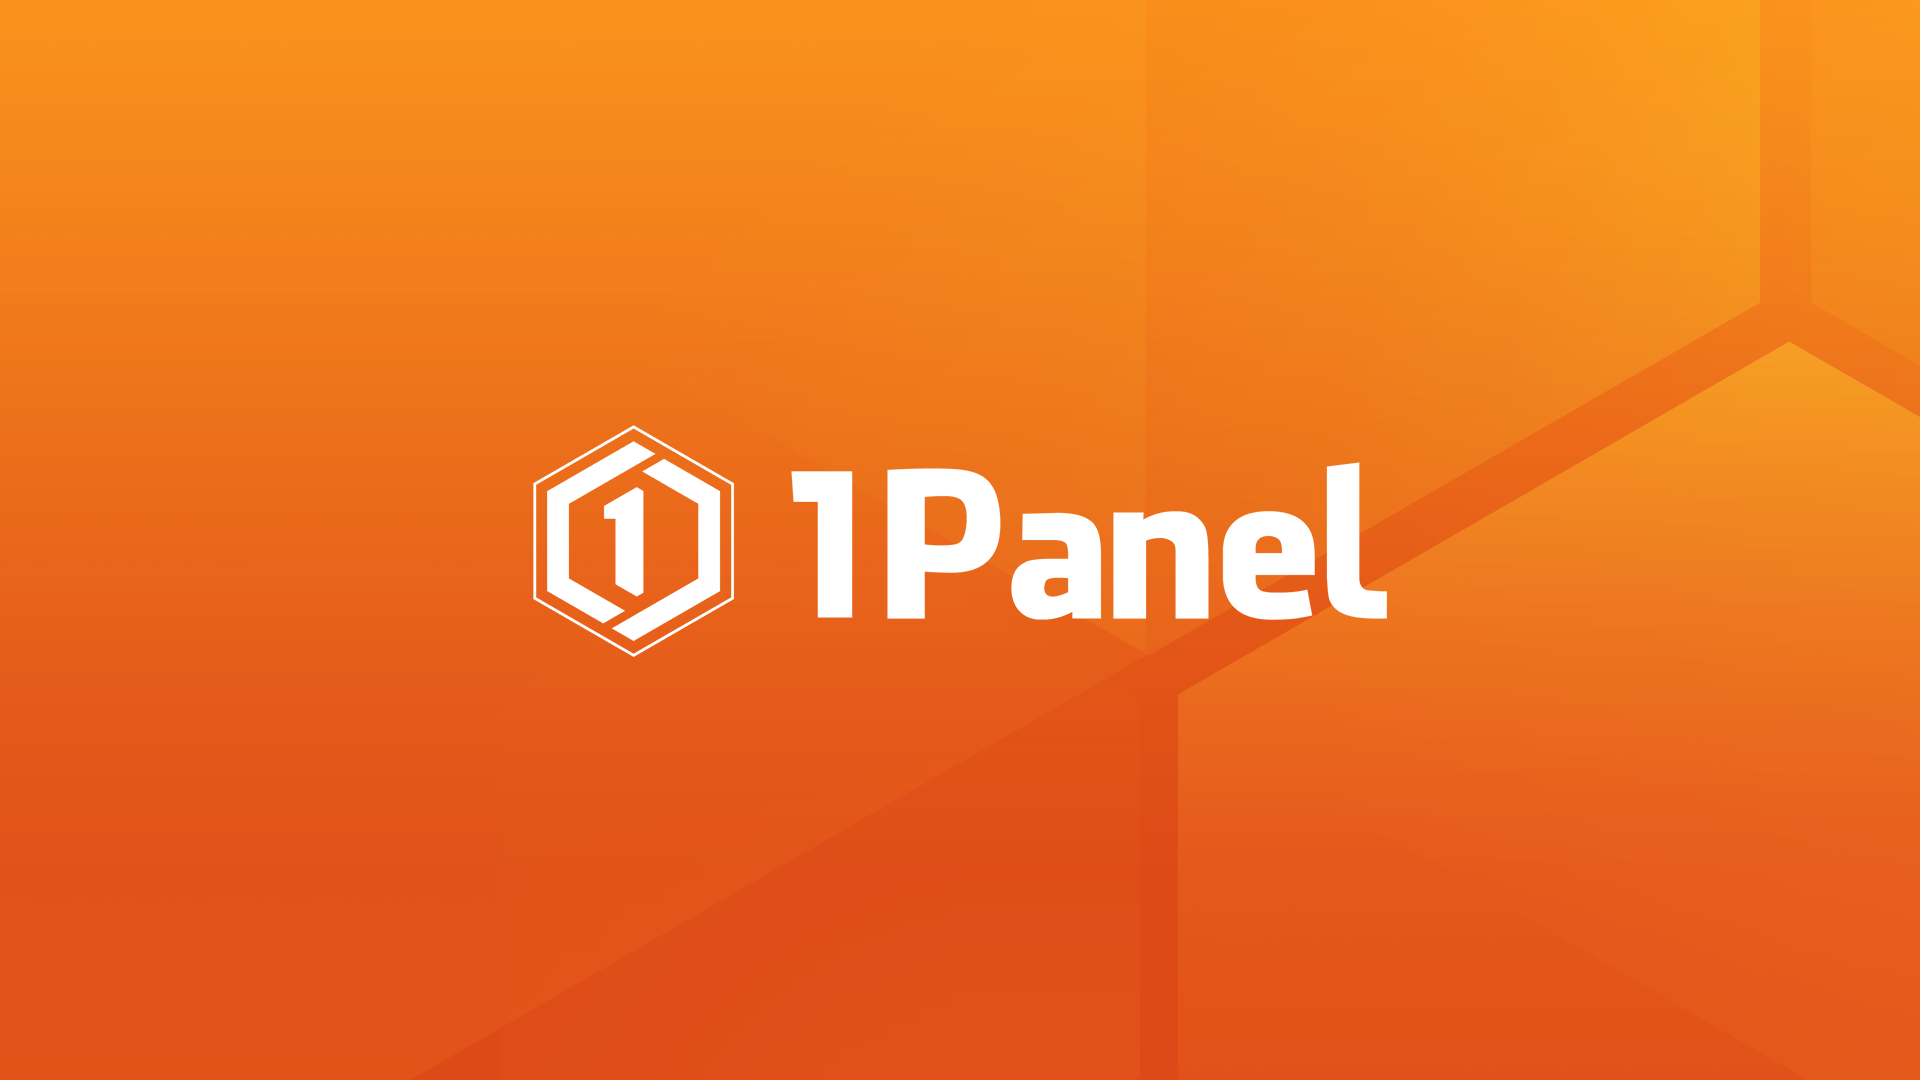 参与有奖！1Panel开源面板社区反馈征集！